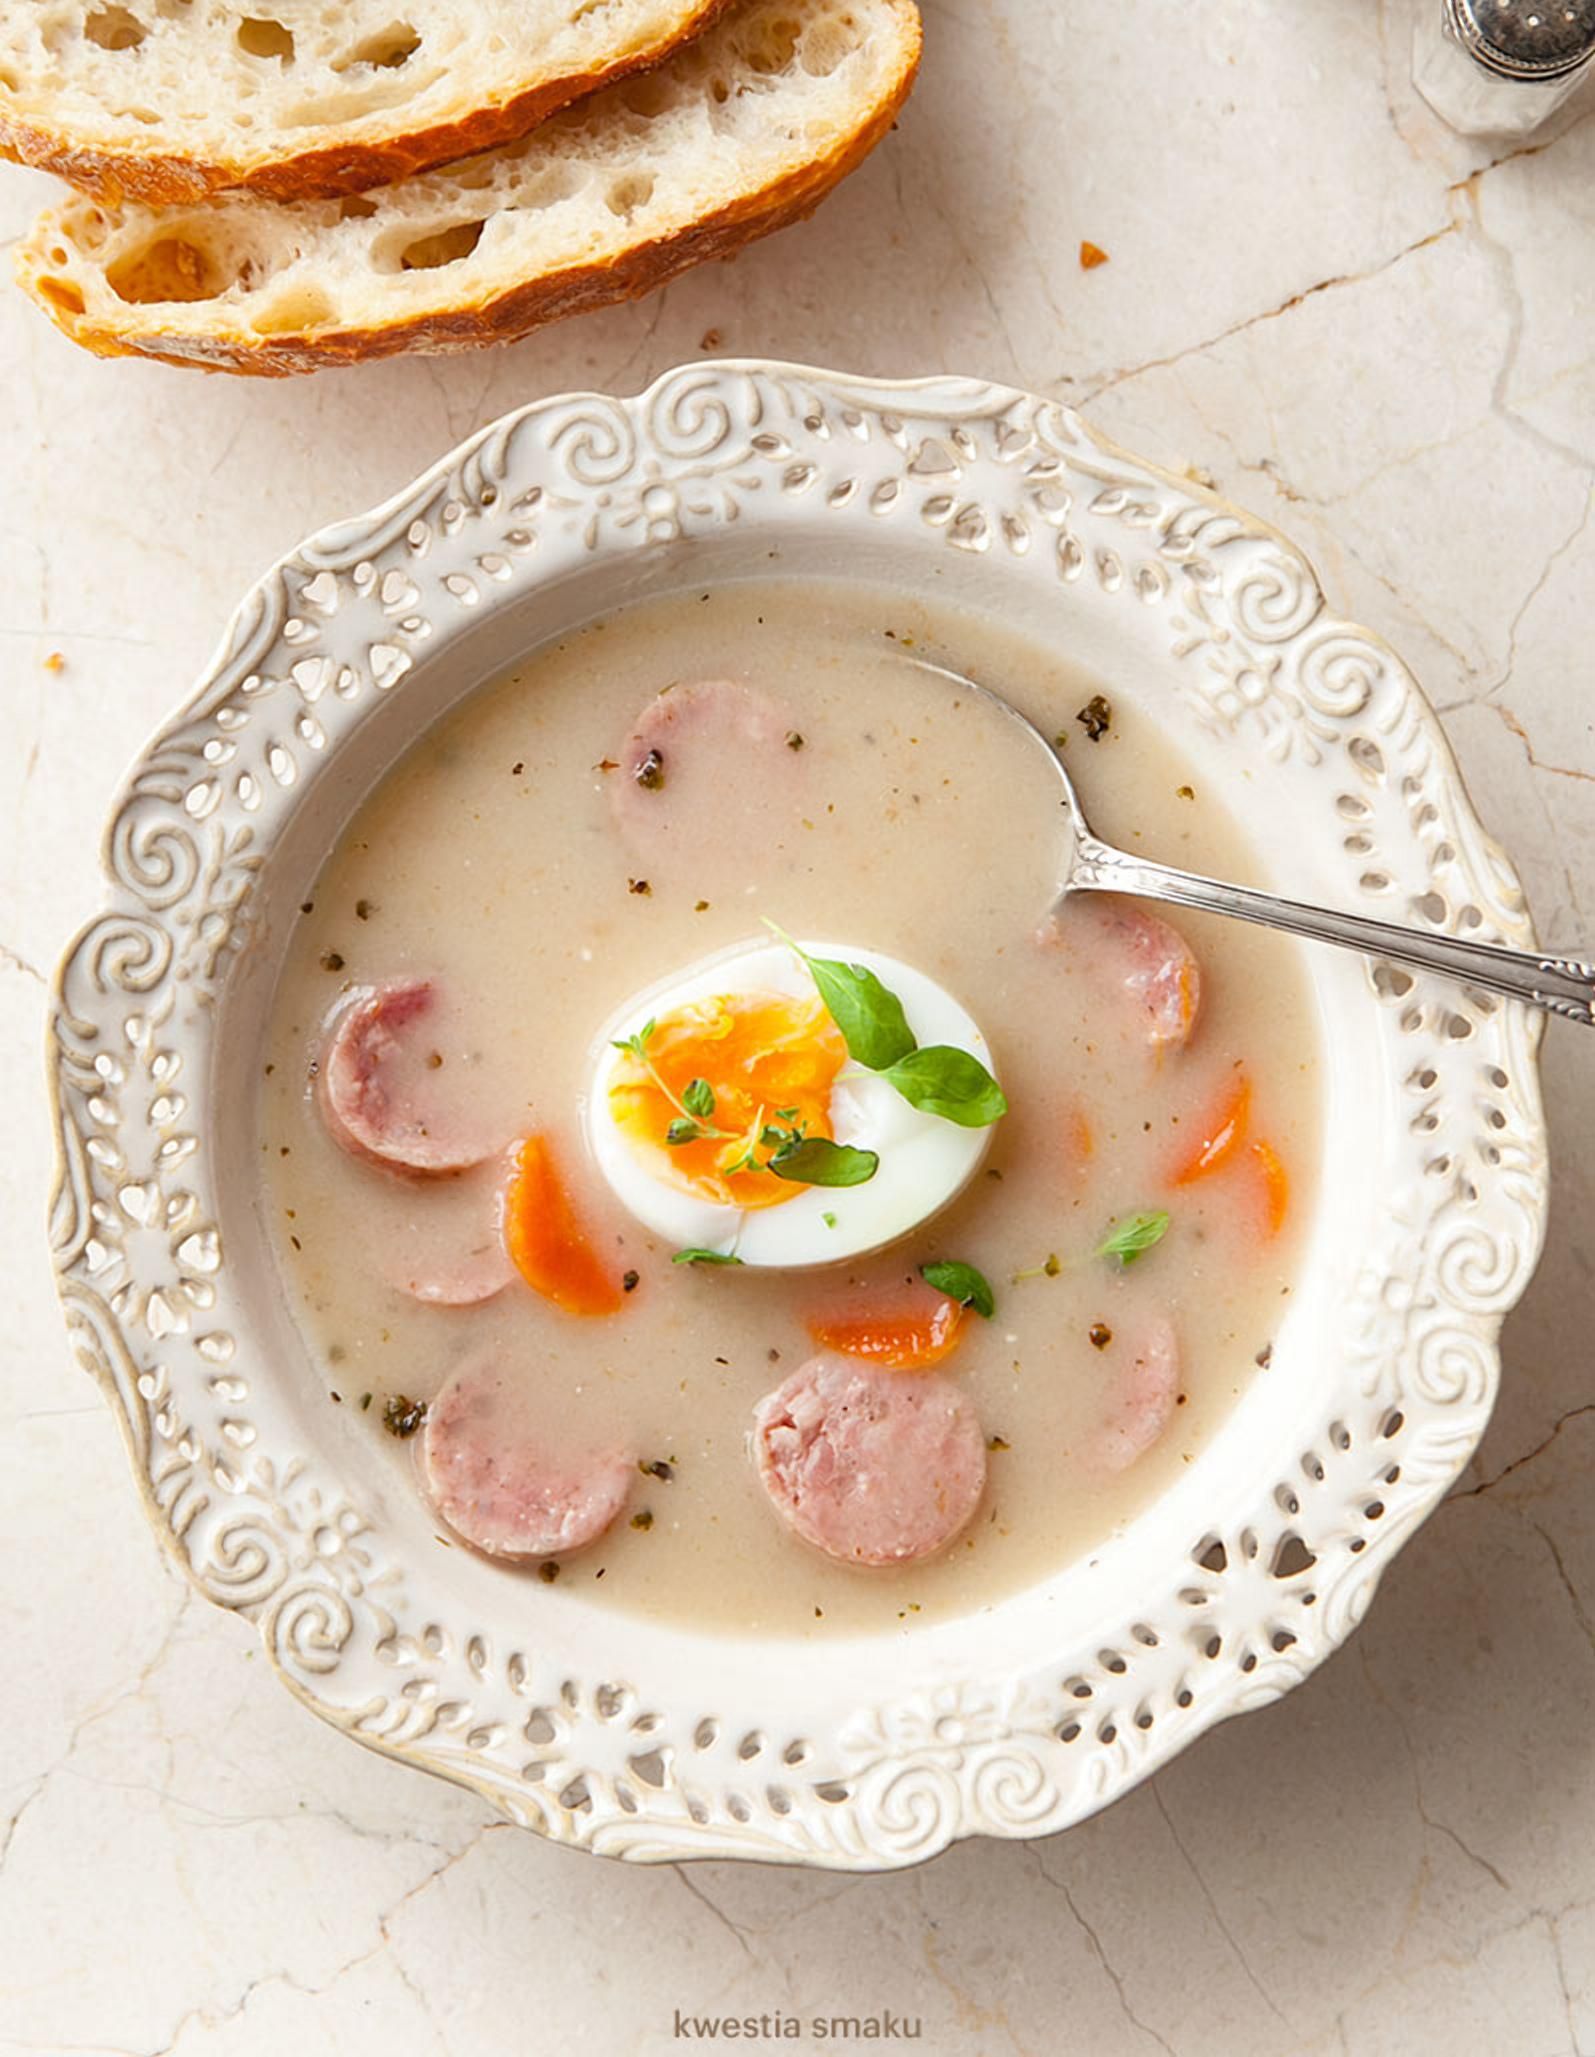 Польский суп журек занял 8-е место в престижном рейтинге 